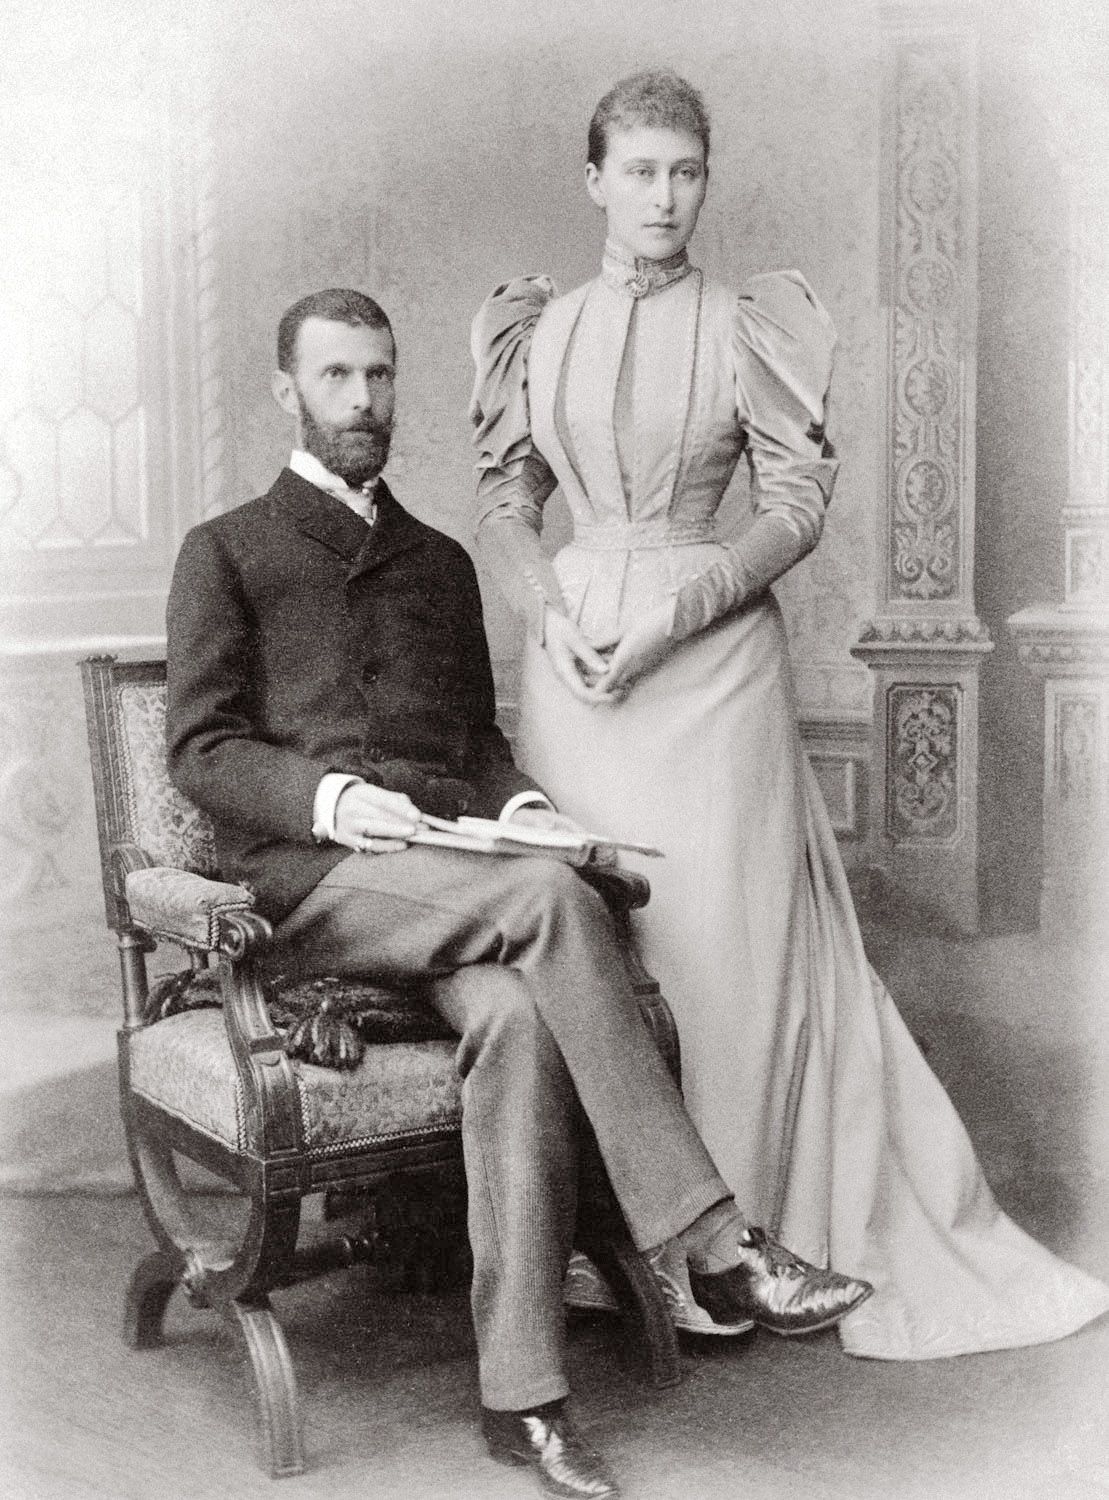 Elżbieta Fiodorowna z mężem Siergiejem Aleksandrowiczem, 1893 r.